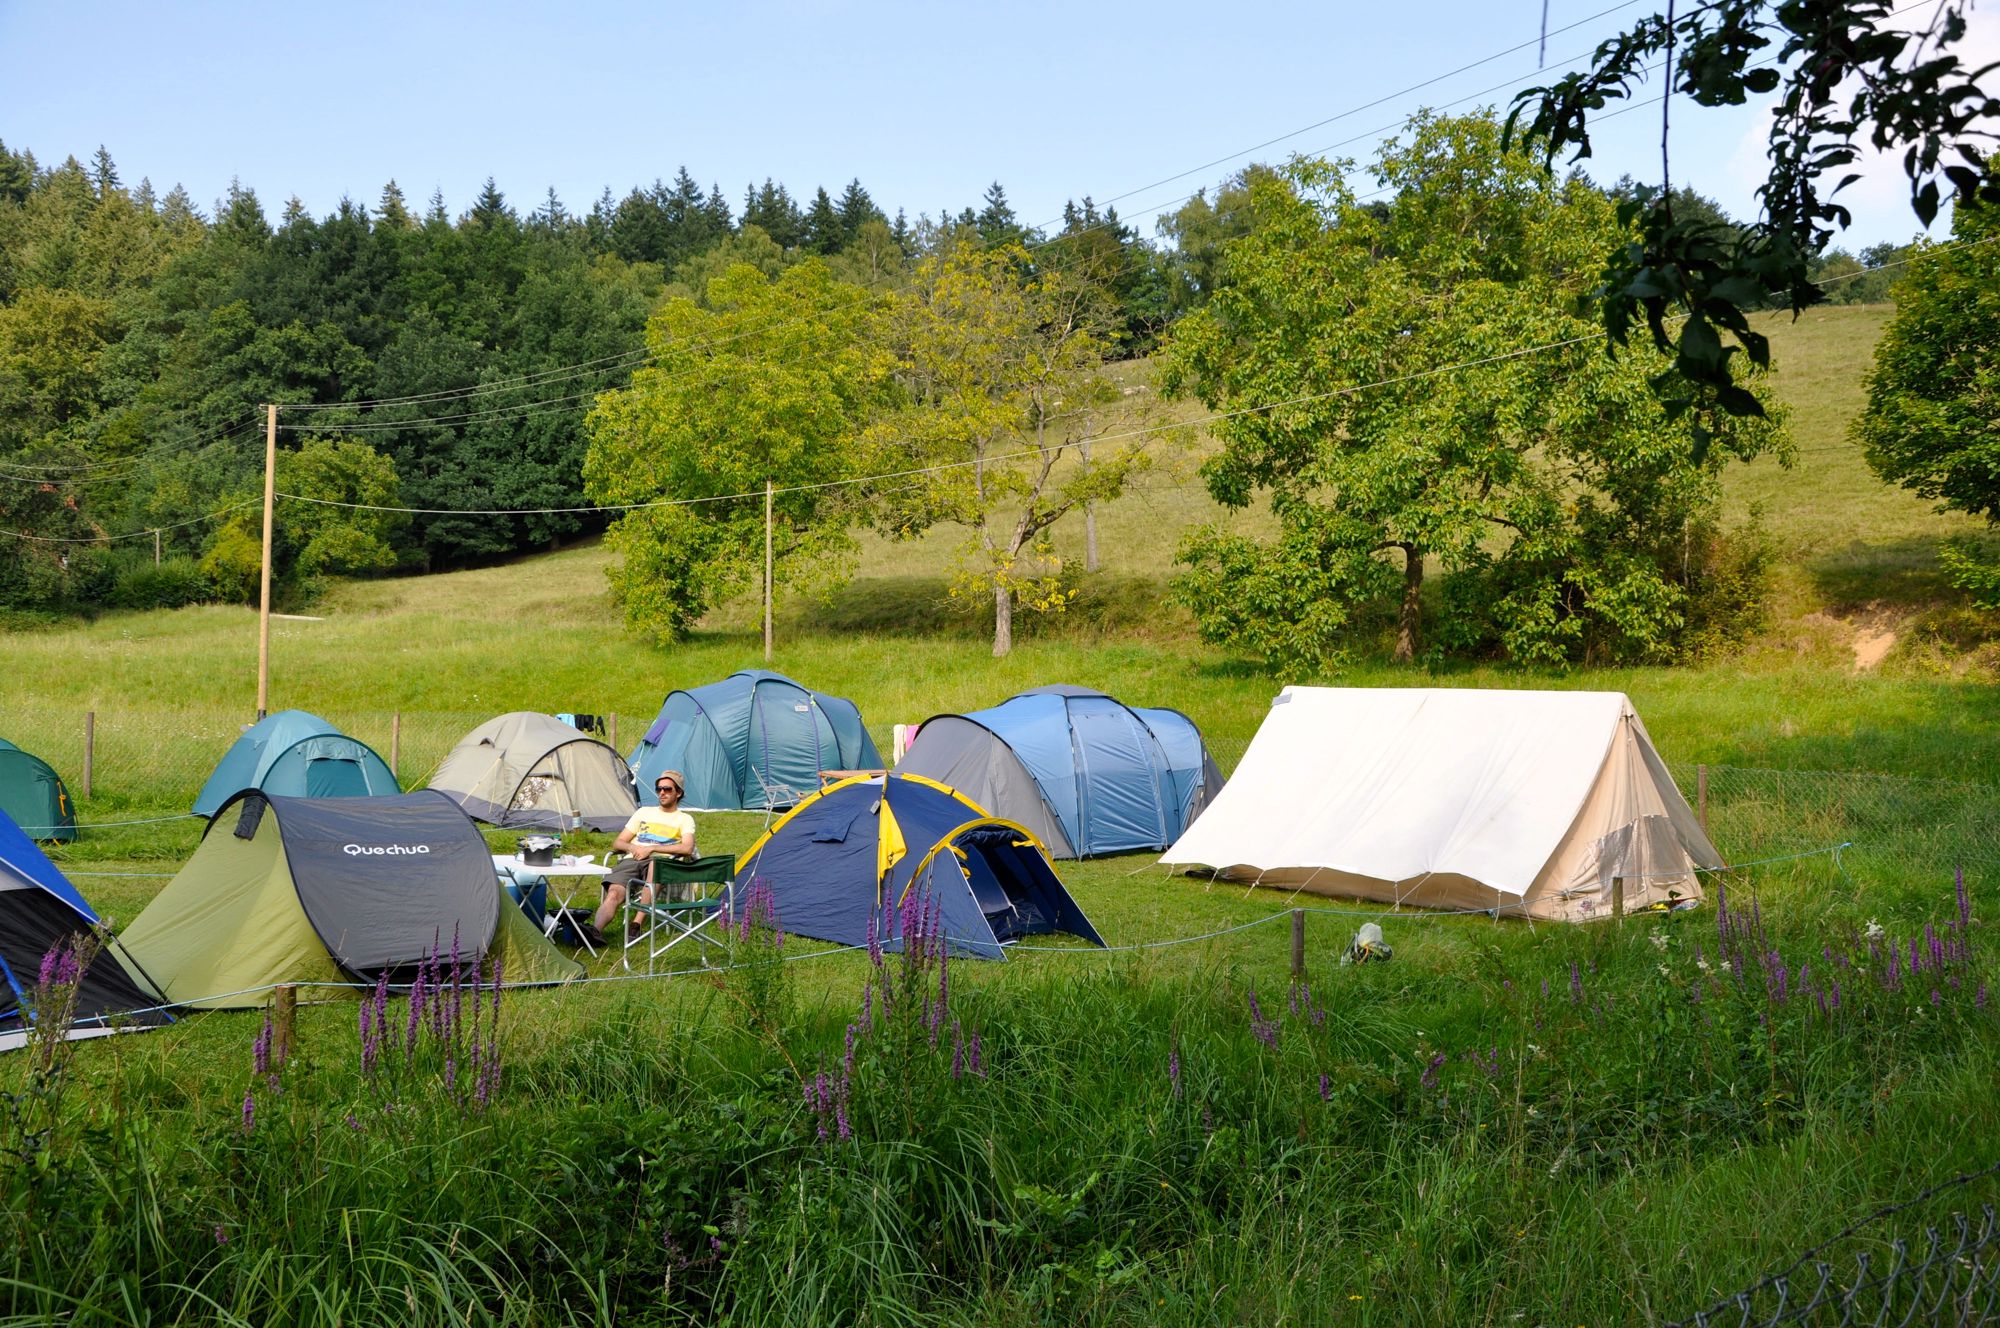 Camping questions. Германия палаточный городок. Стоянка автокемпинг. Nature Camping палатка 4 местная. Палаточные стоянки в Башкирии.